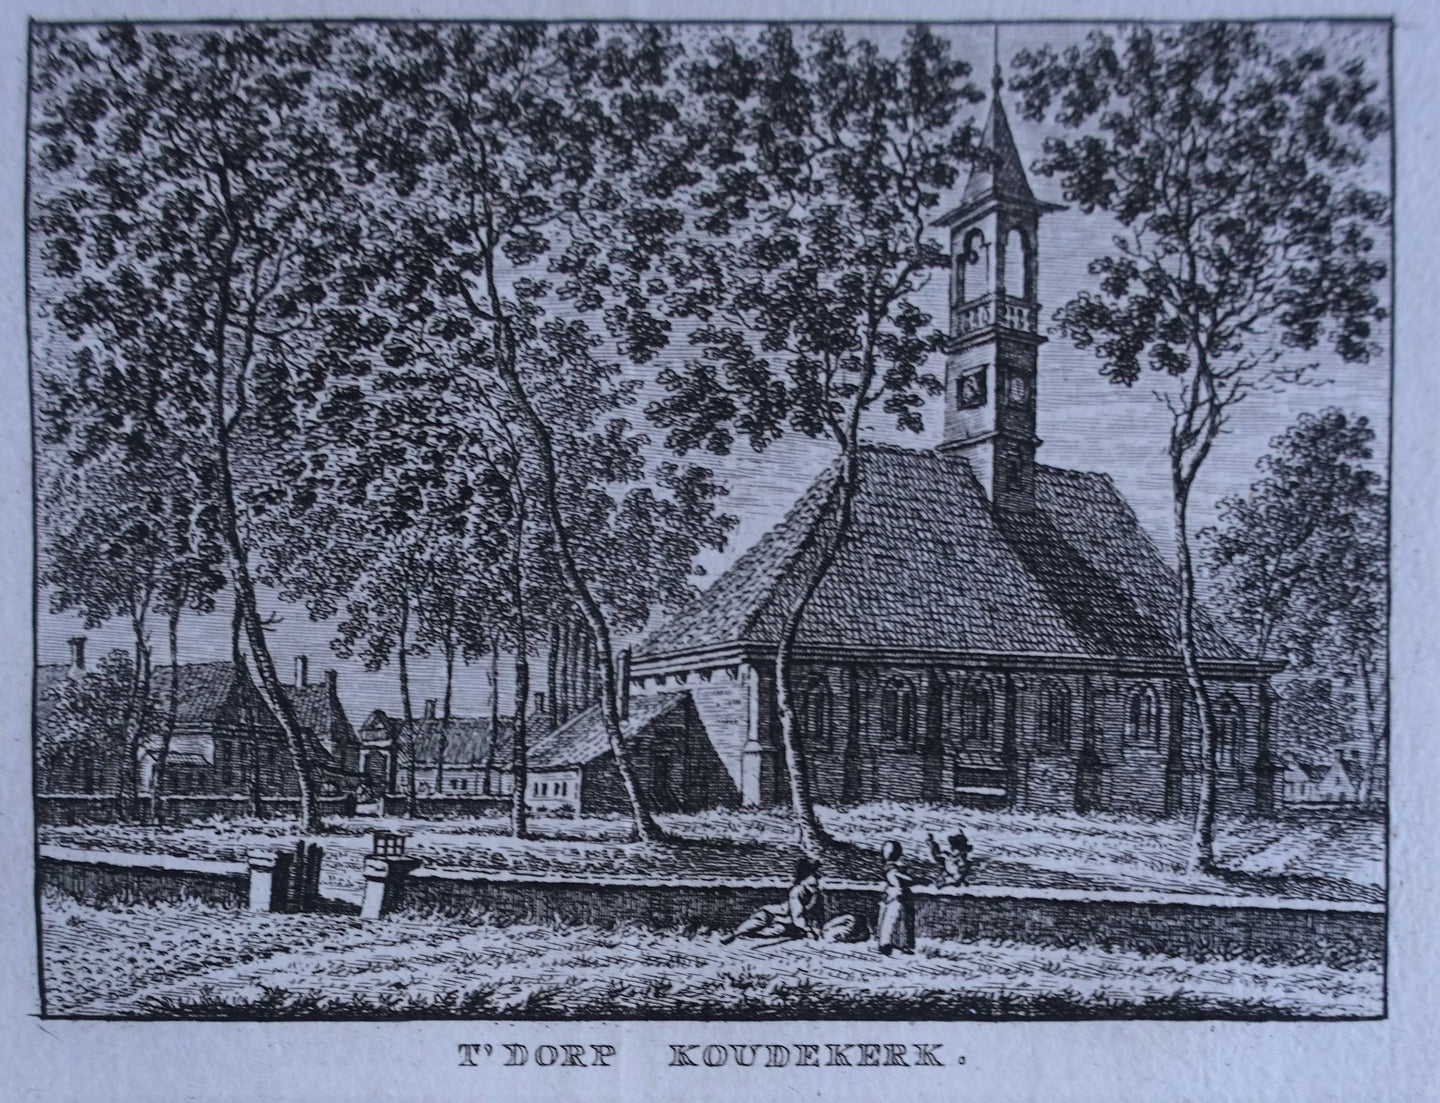 Koudekerke - KF Bendorp - 1793